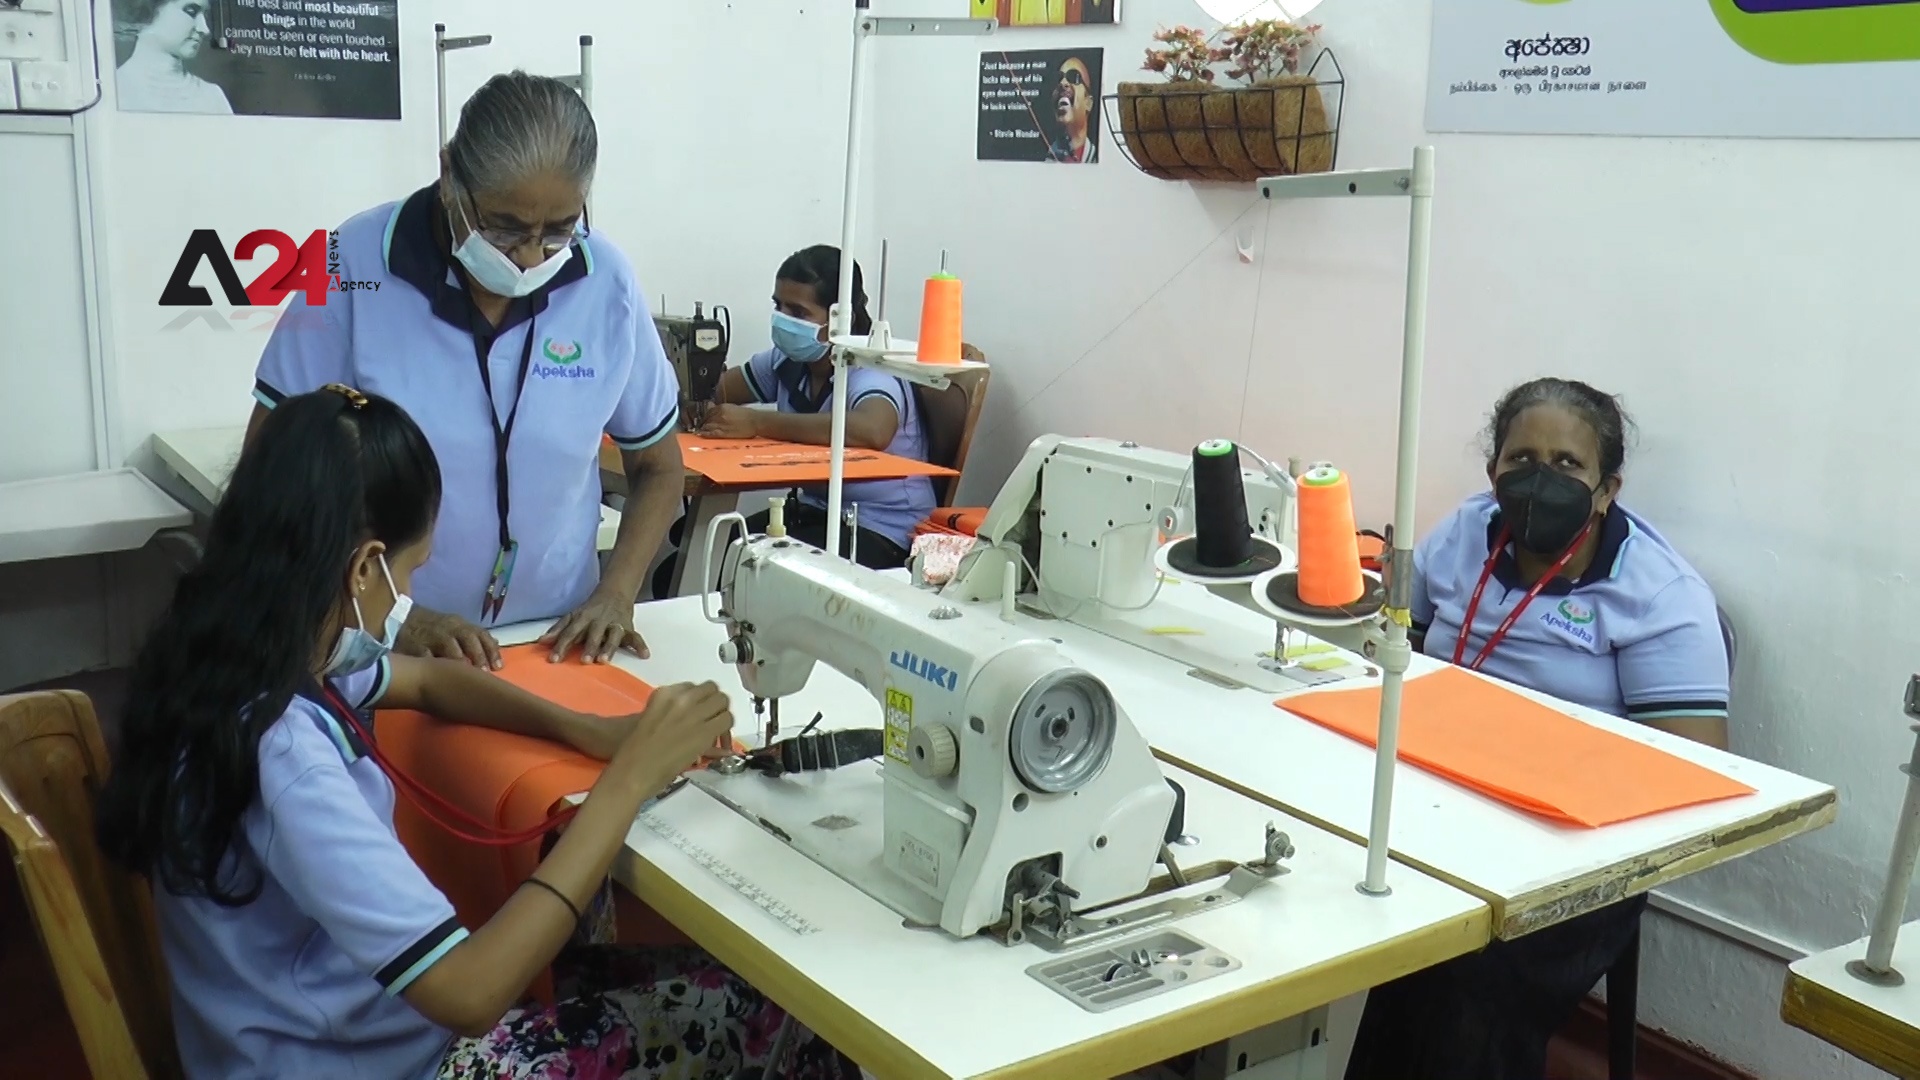 سريلانكا - كفيفات ينسجن خيوط الأمل بالعمل في مصنع خياطة